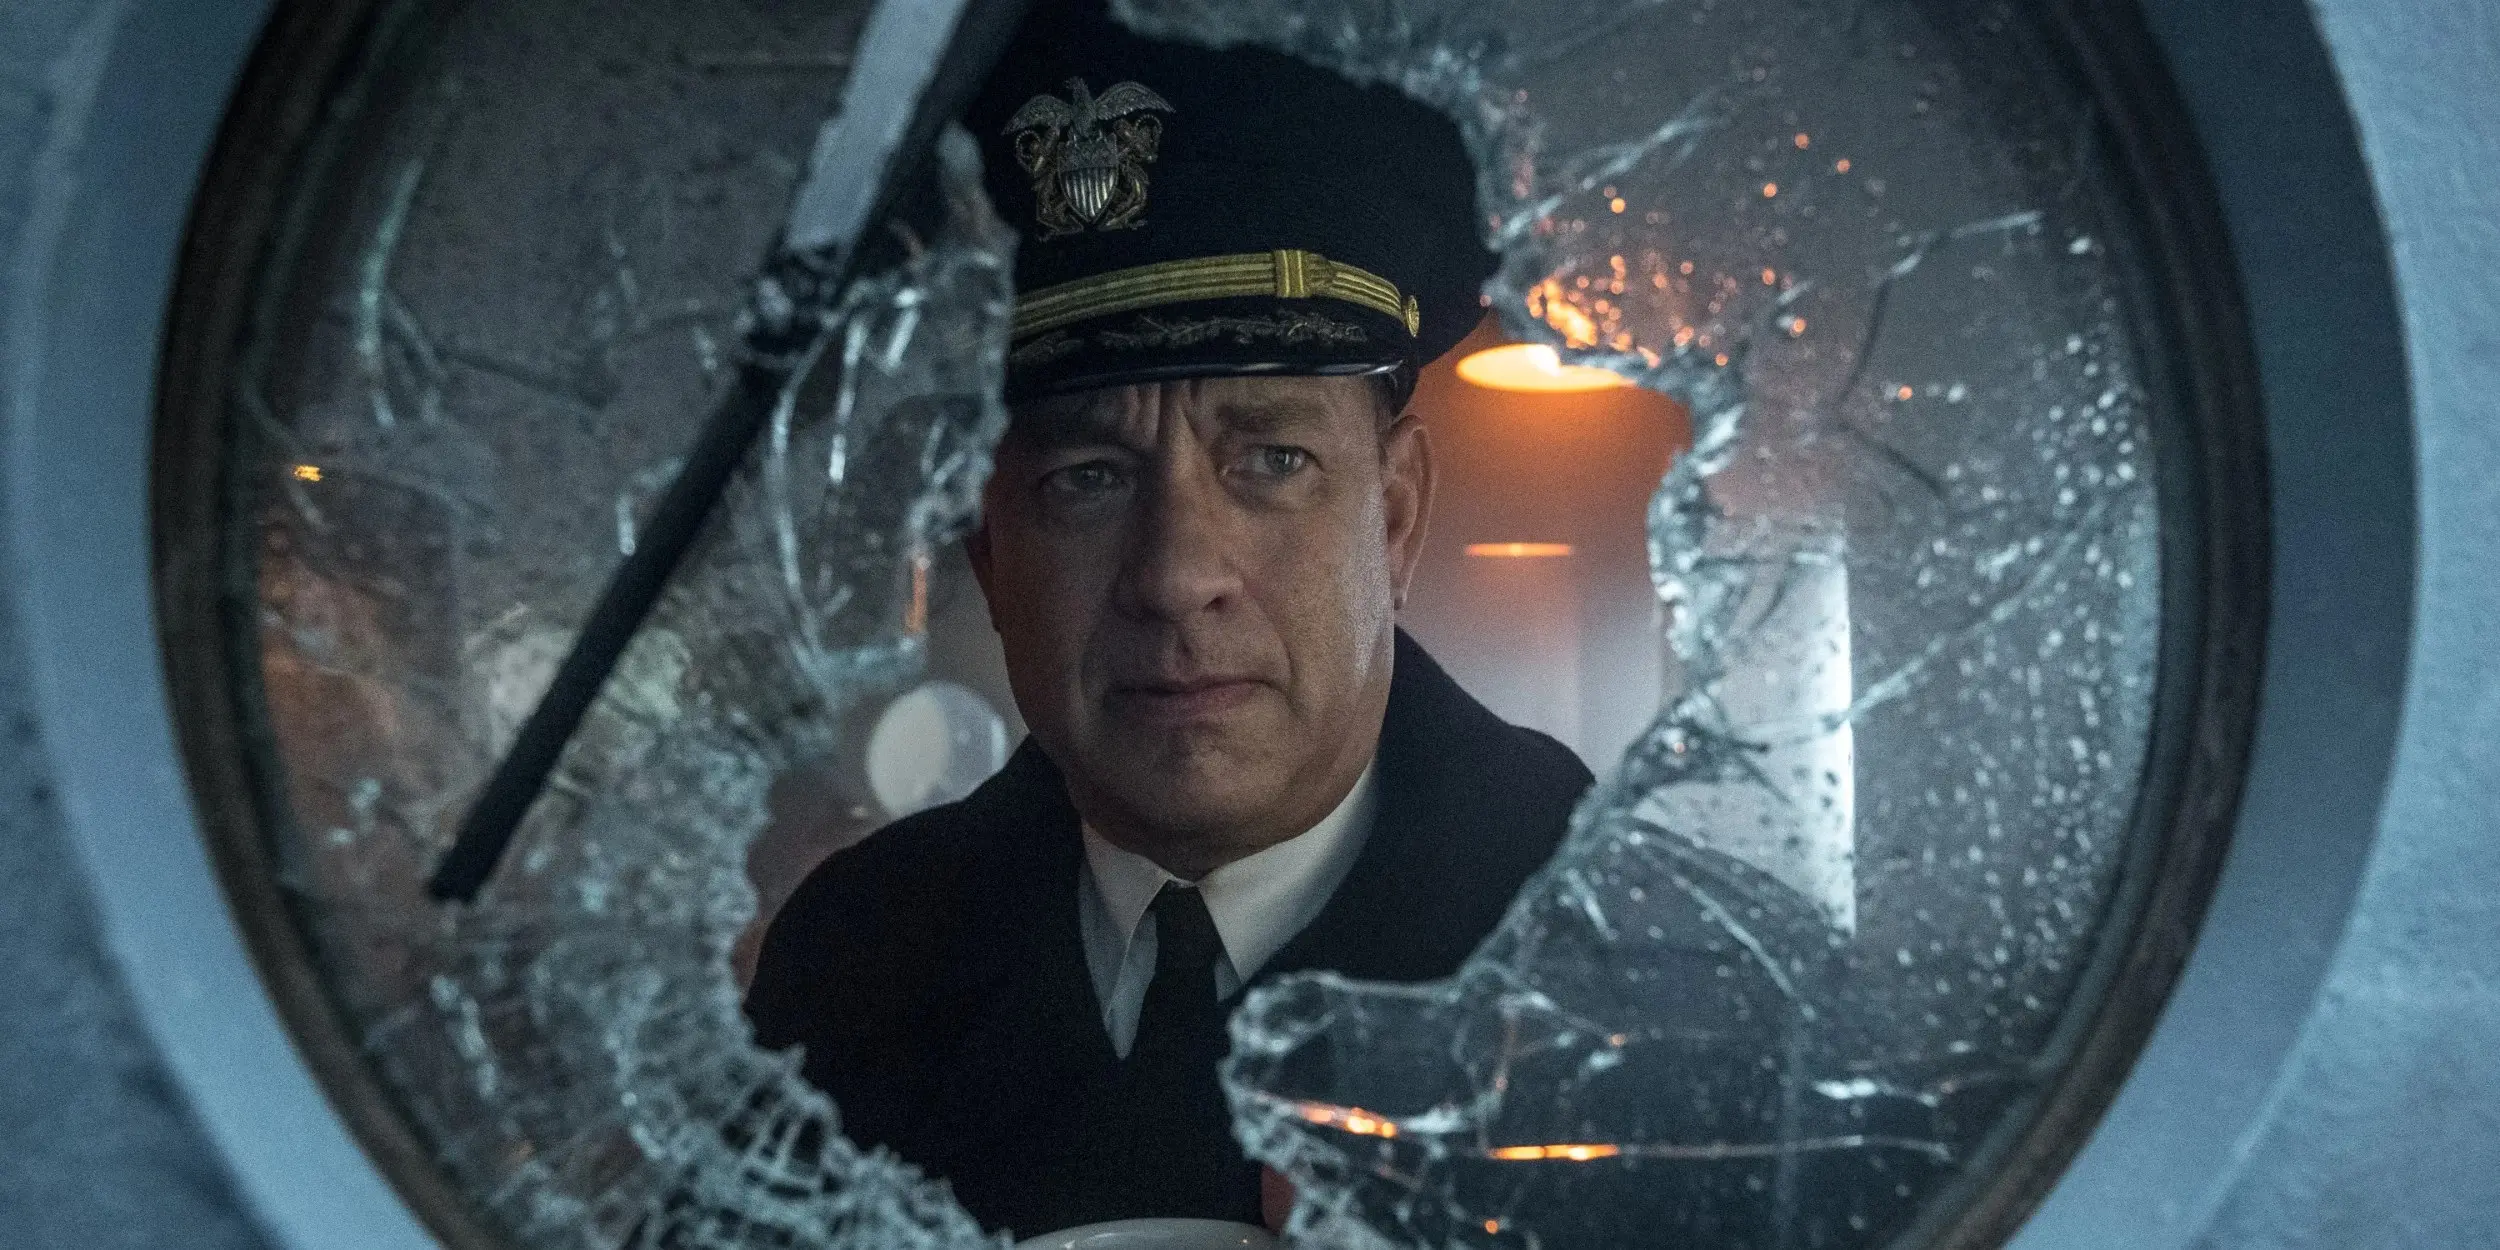 Trailer: Tom Hanks vzdoruje nacistickým ponorkám ve filmu podle vlastního scénáře